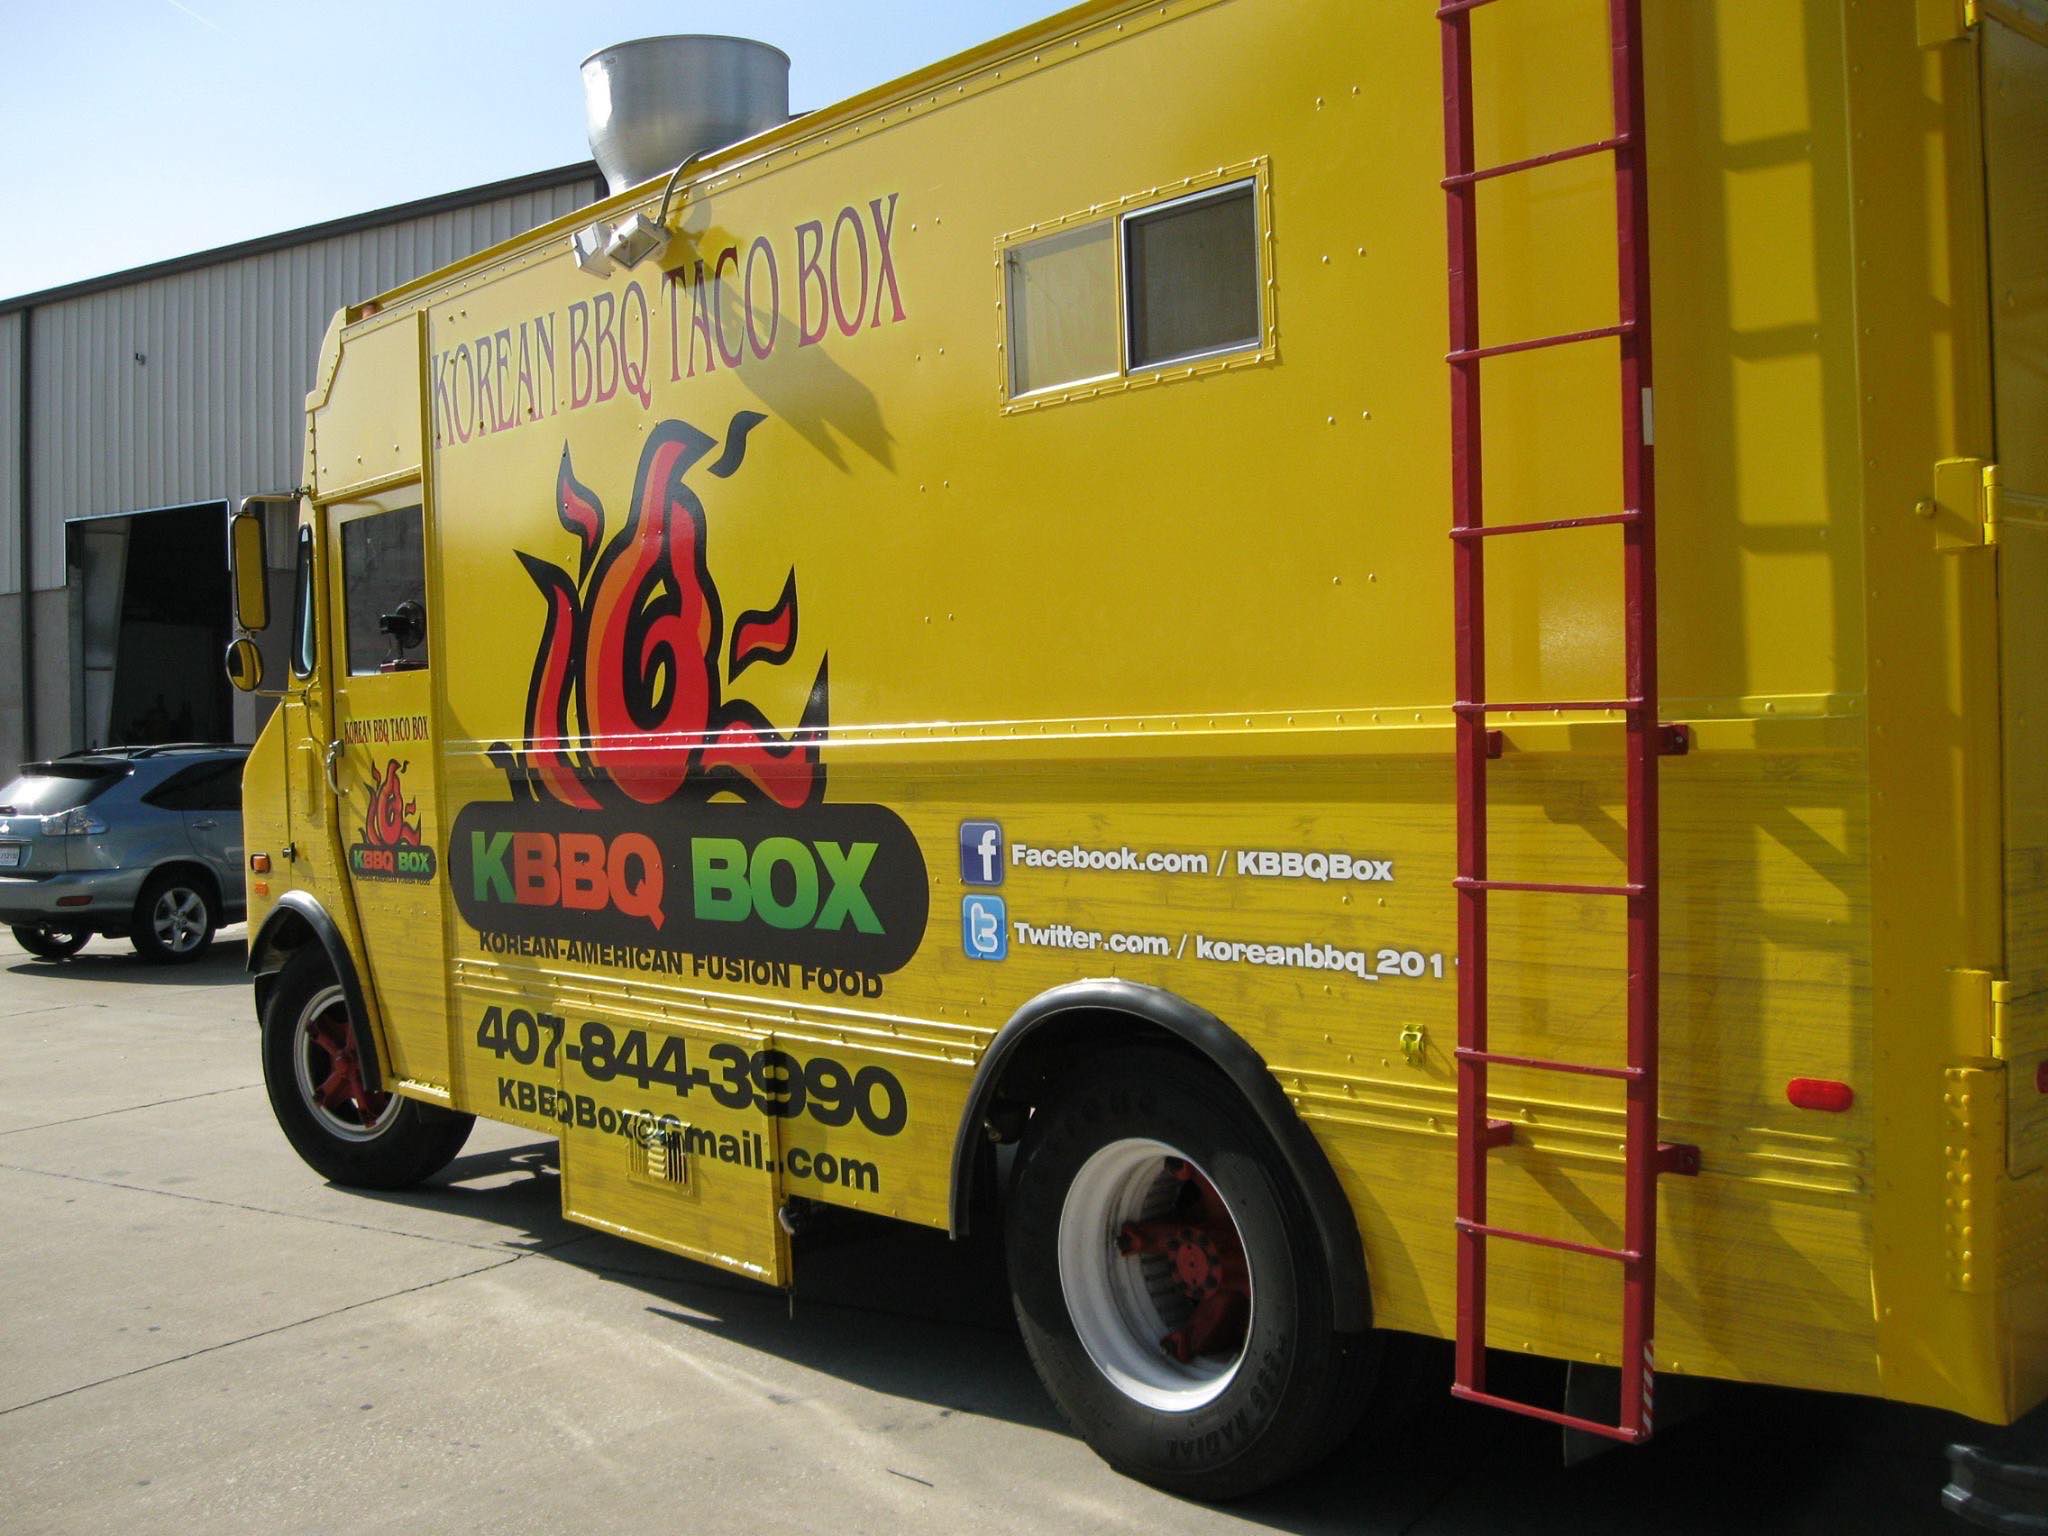 Korean BBQ Taco Box Food Truck